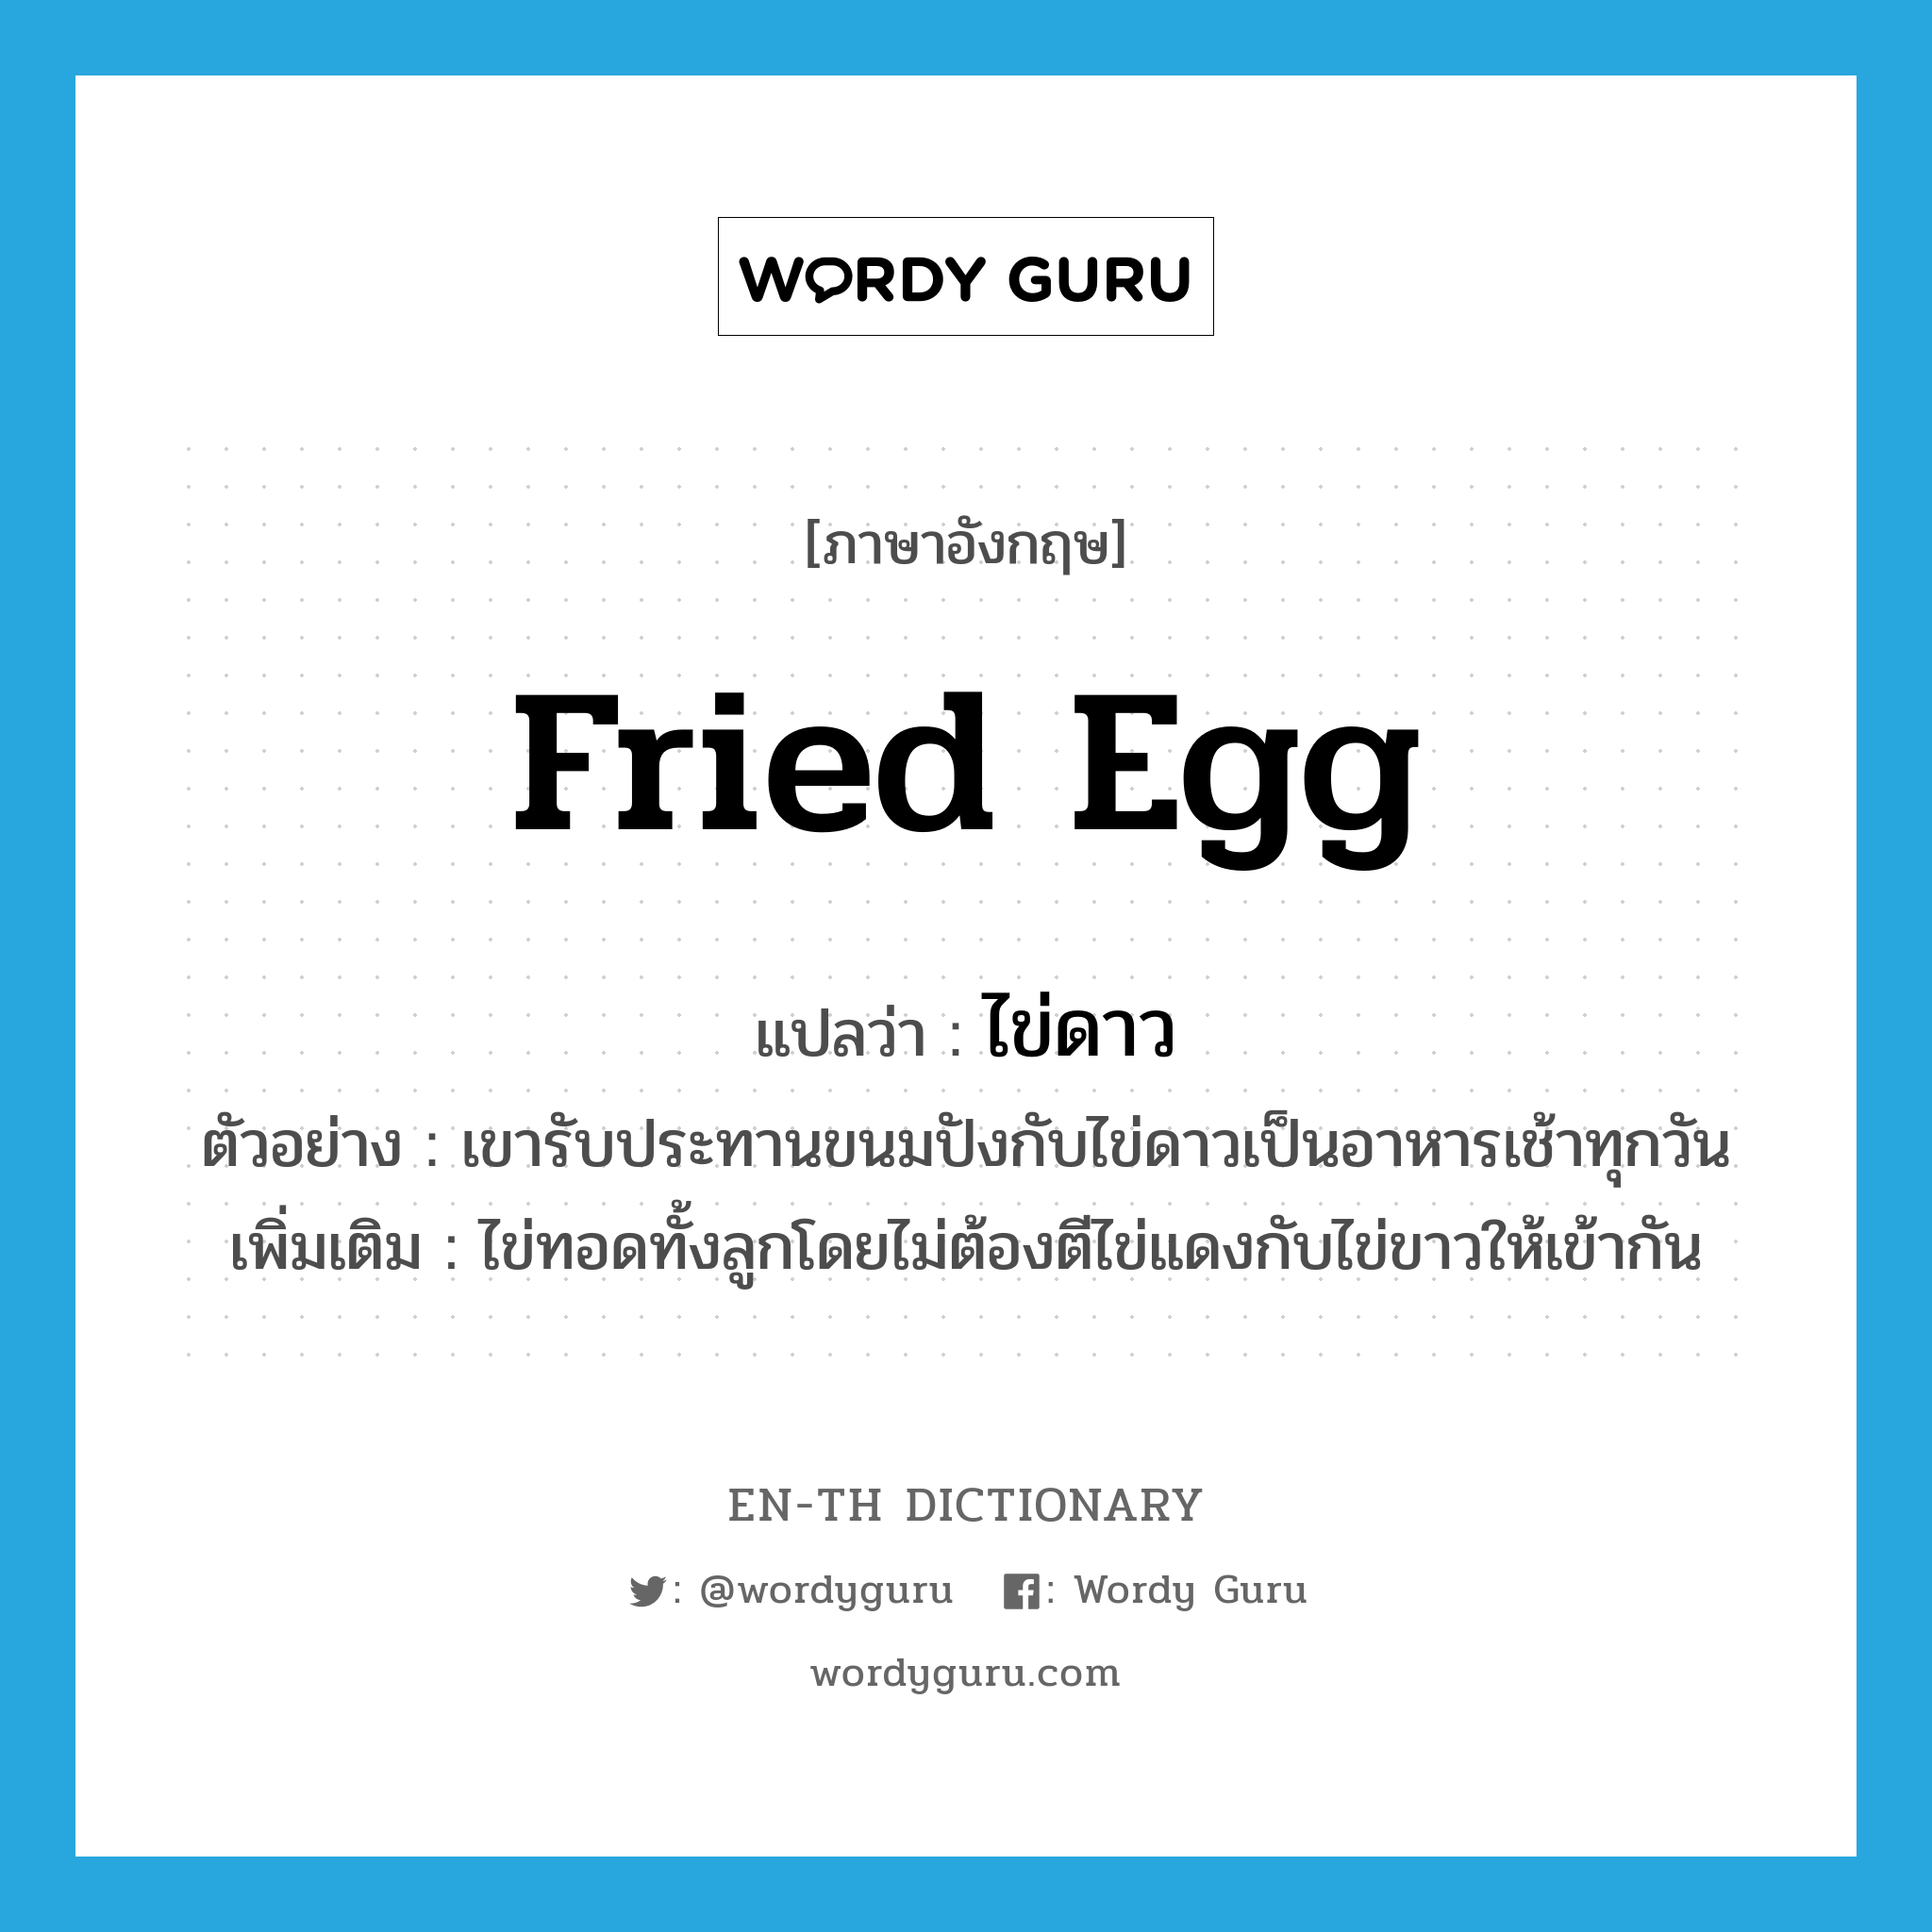 fried egg แปลว่า?, คำศัพท์ภาษาอังกฤษ fried egg แปลว่า ไข่ดาว ประเภท N ตัวอย่าง เขารับประทานขนมปังกับไข่ดาวเป็นอาหารเช้าทุกวัน เพิ่มเติม ไข่ทอดทั้งลูกโดยไม่ต้องตีไข่แดงกับไข่ขาวให้เข้ากัน หมวด N